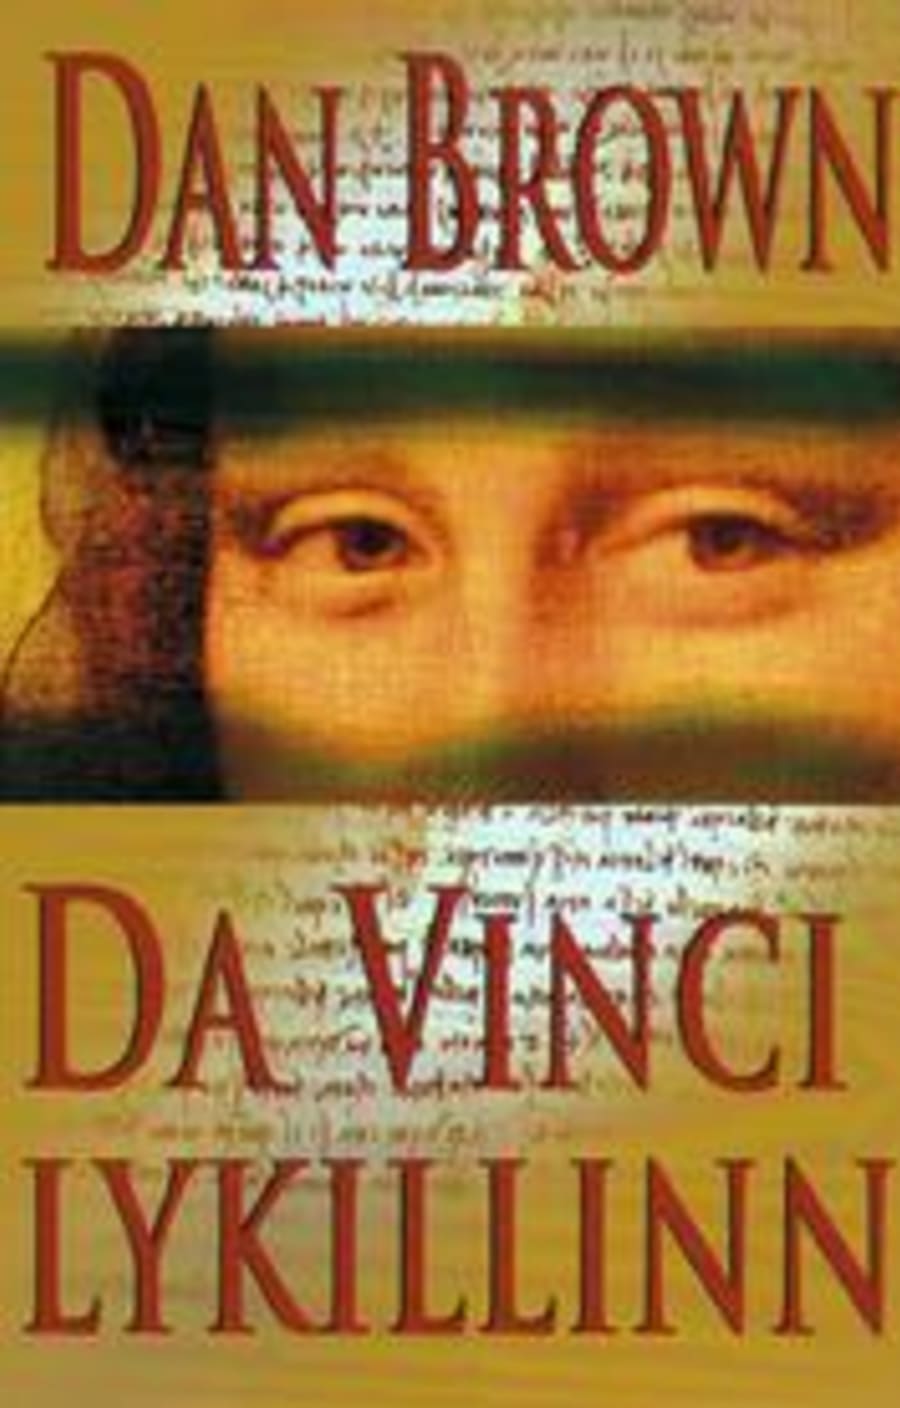 Da Vinci lykillinn